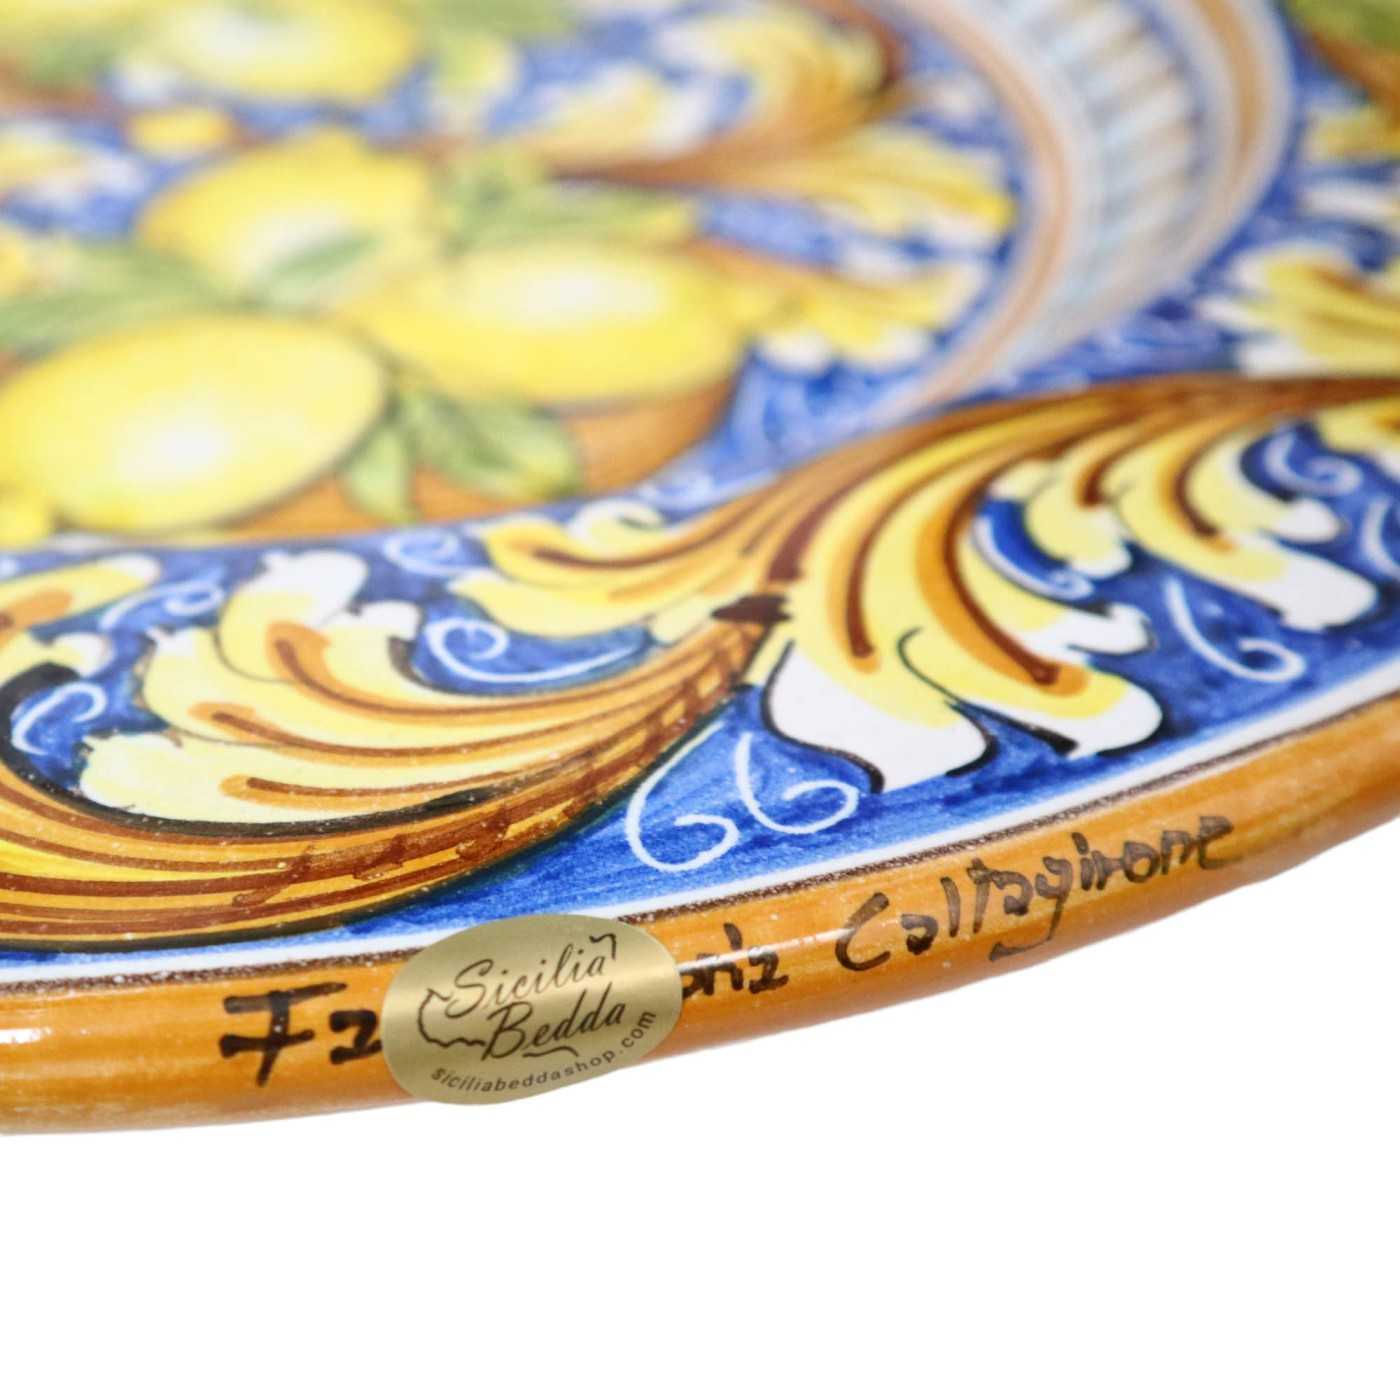 Piatto con limoni in ceramica da parete Produzione artigianale di  Caltagirone Diametro 37cm - Terrasini (Palermo)